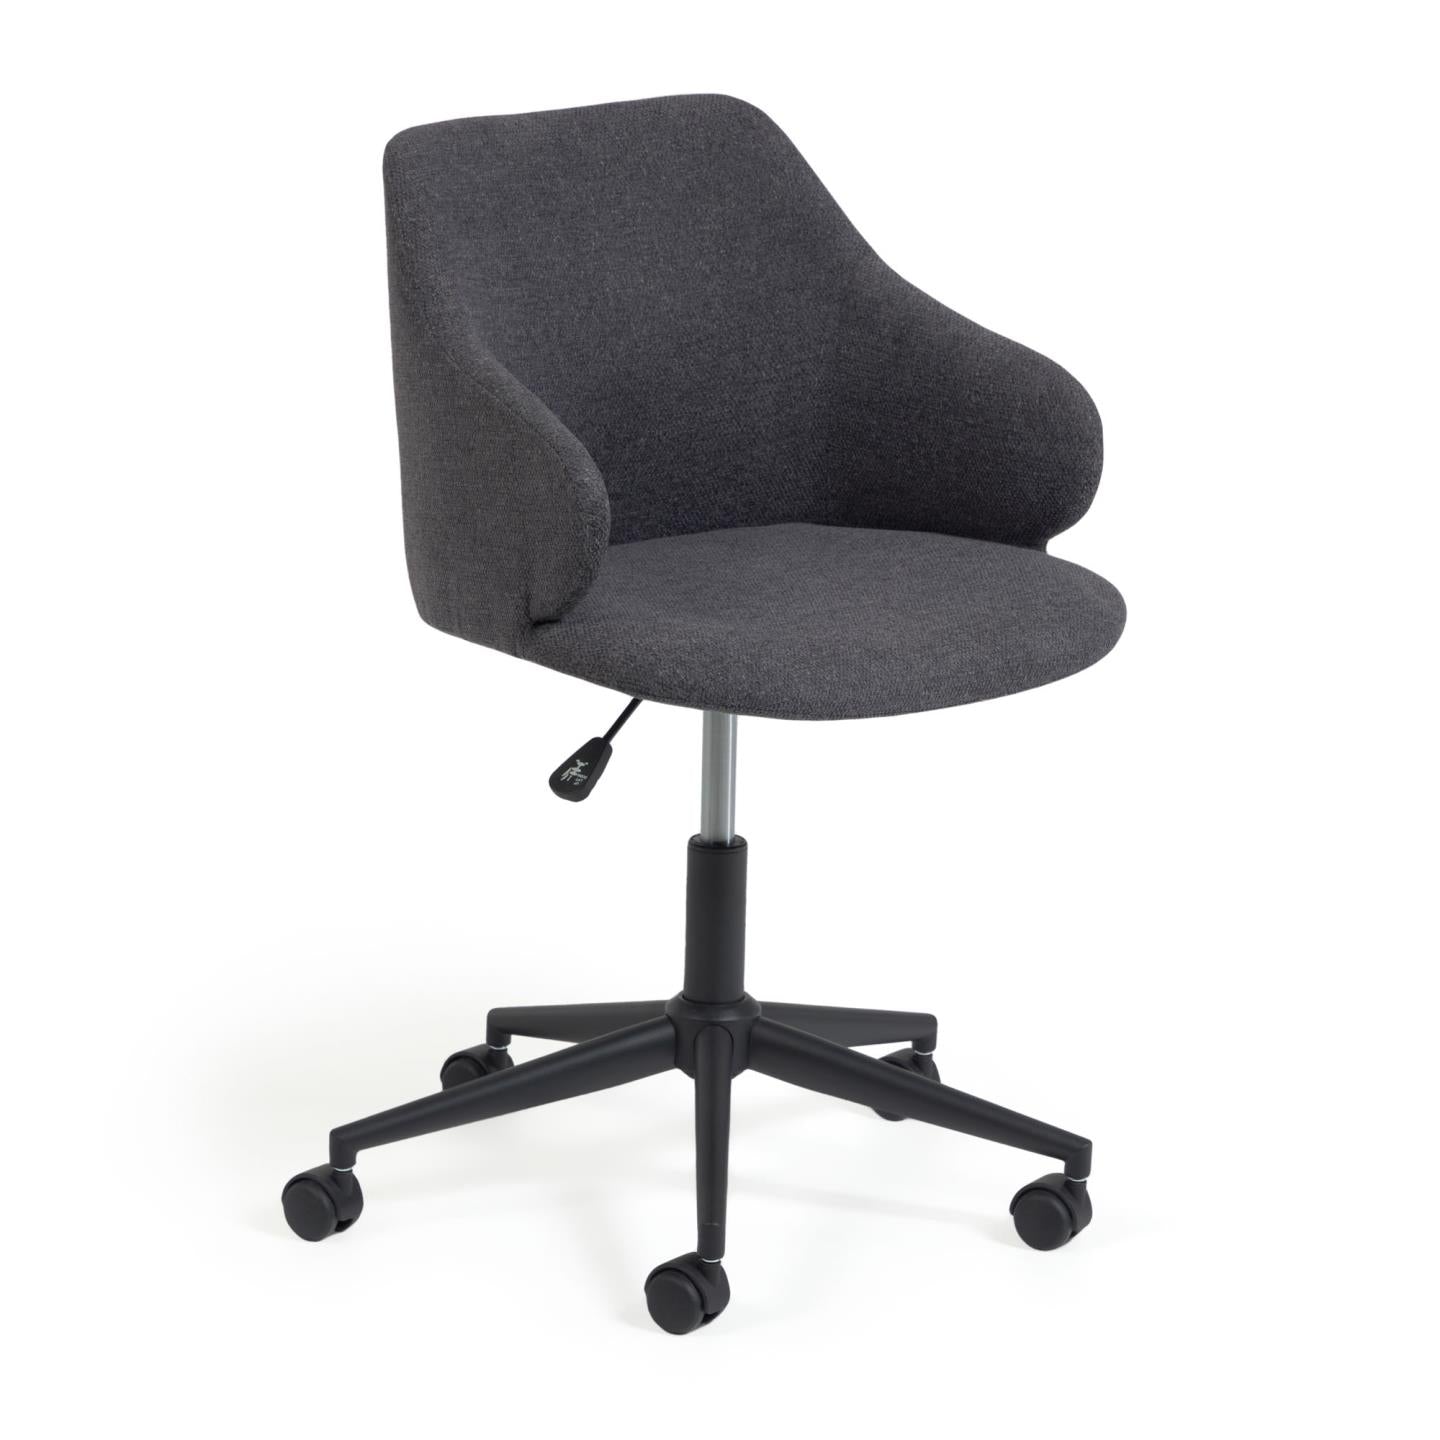 Einara dark grey office chair